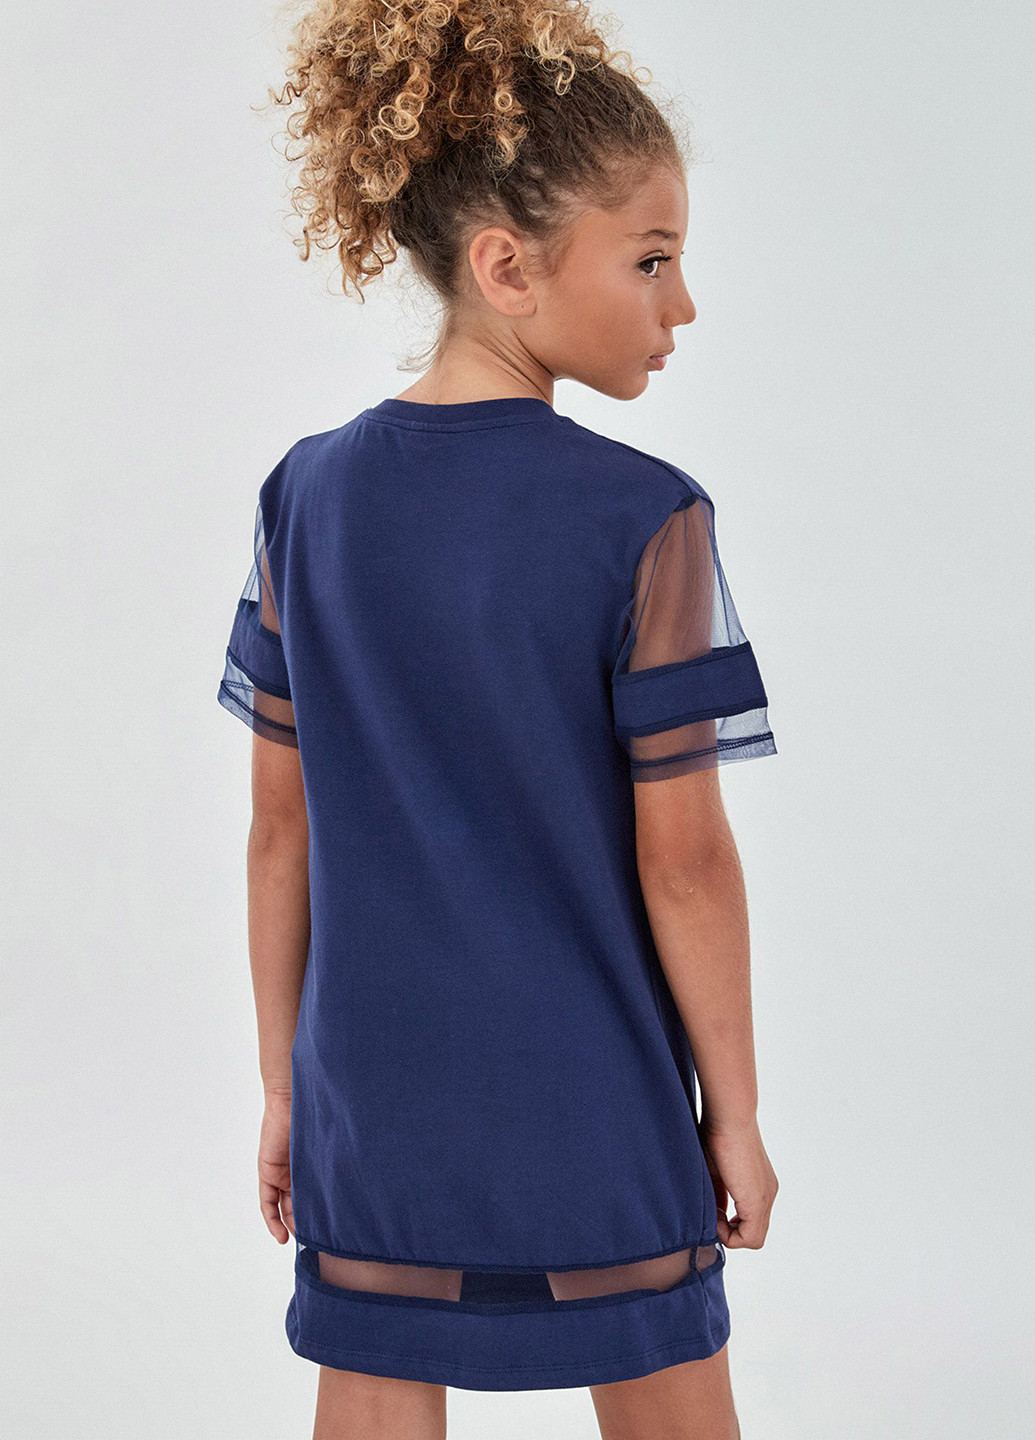 Темно-синее спортивное платье платье-футболка Piazza Italia с надписью